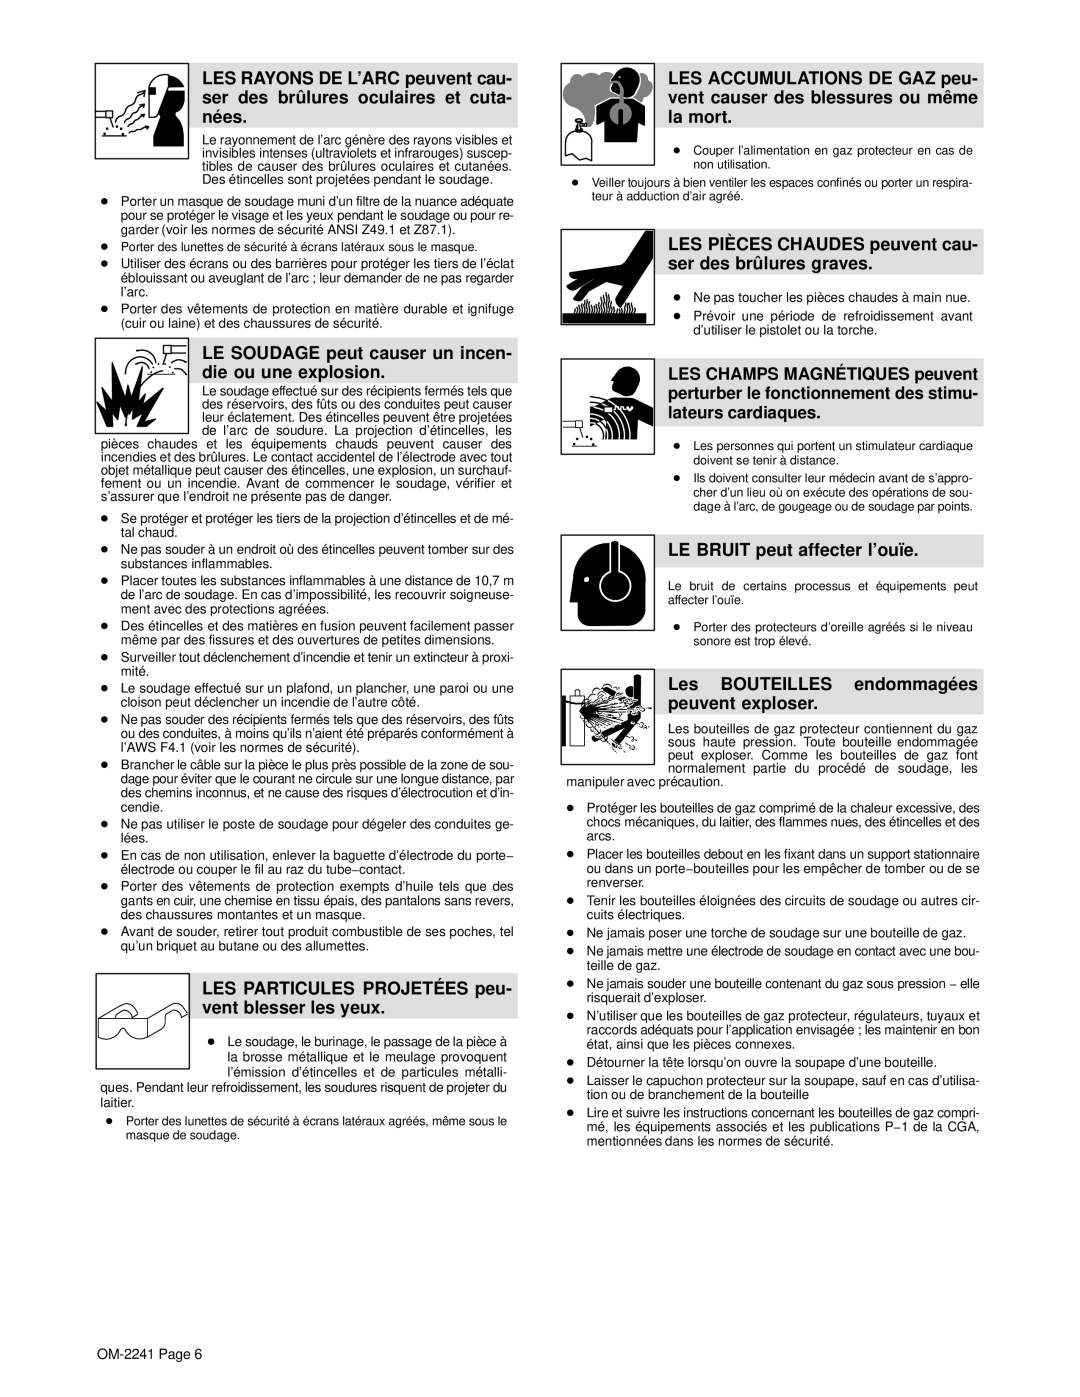 Miller Electric OM-2241 manual LE Soudage peut causer un incen- die ou une explosion, LE Bruit peut affecter l’ouïe 